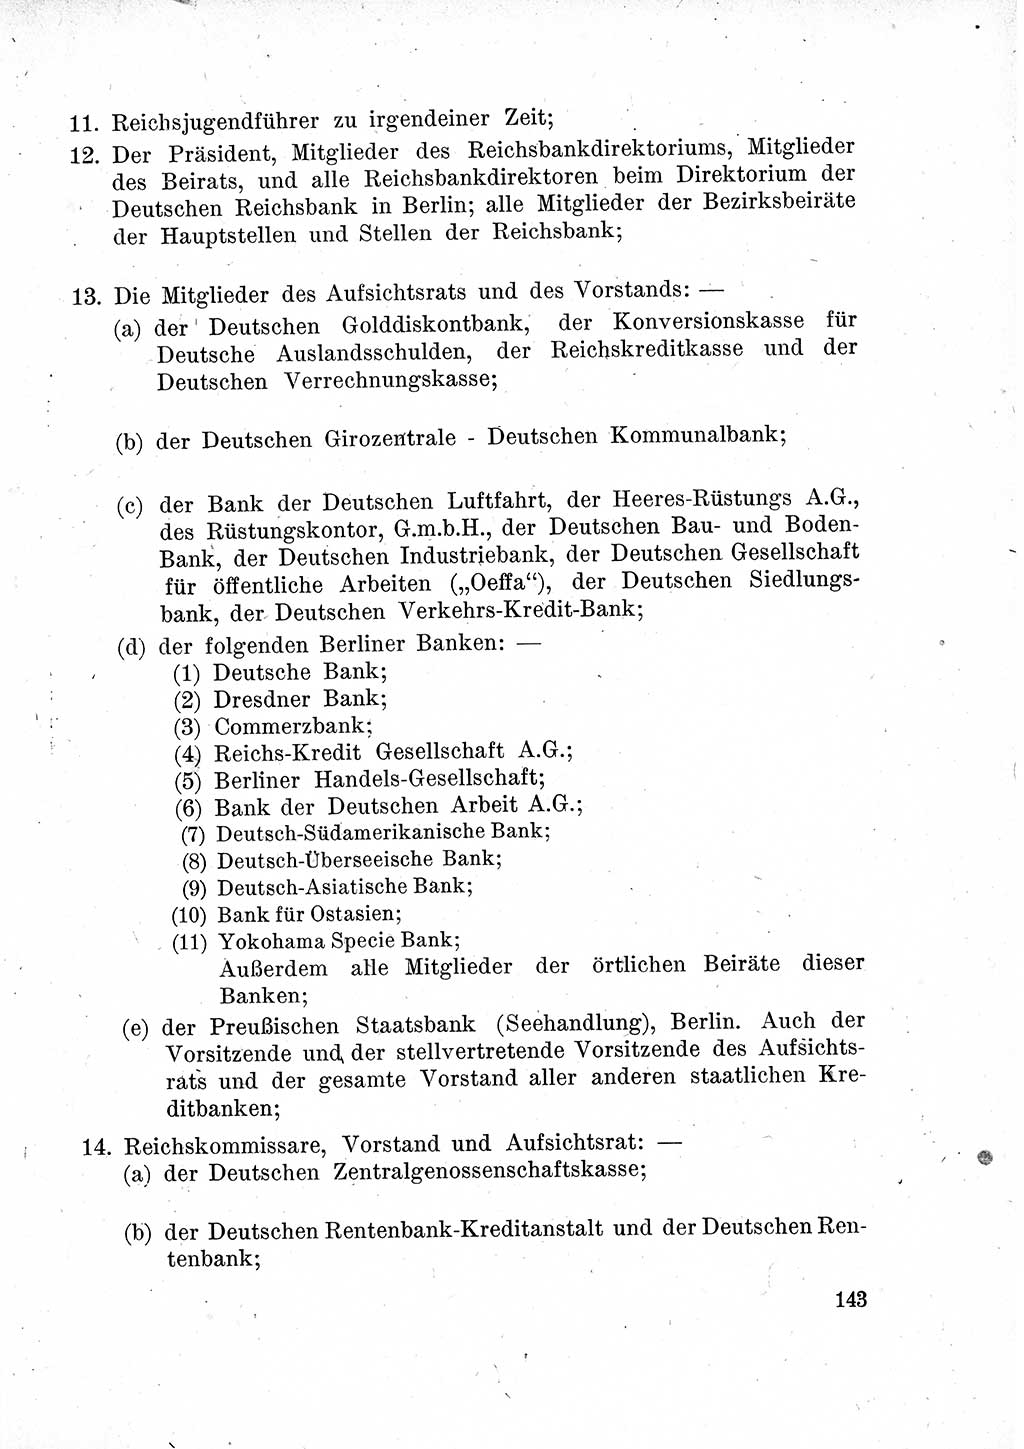 Das Recht der Besatzungsmacht (Deutschland), Proklamationen, Deklerationen, Verordnungen, Gesetze und Bekanntmachungen 1947, Seite 143 (R. Bes. Dtl. 1947, S. 143)